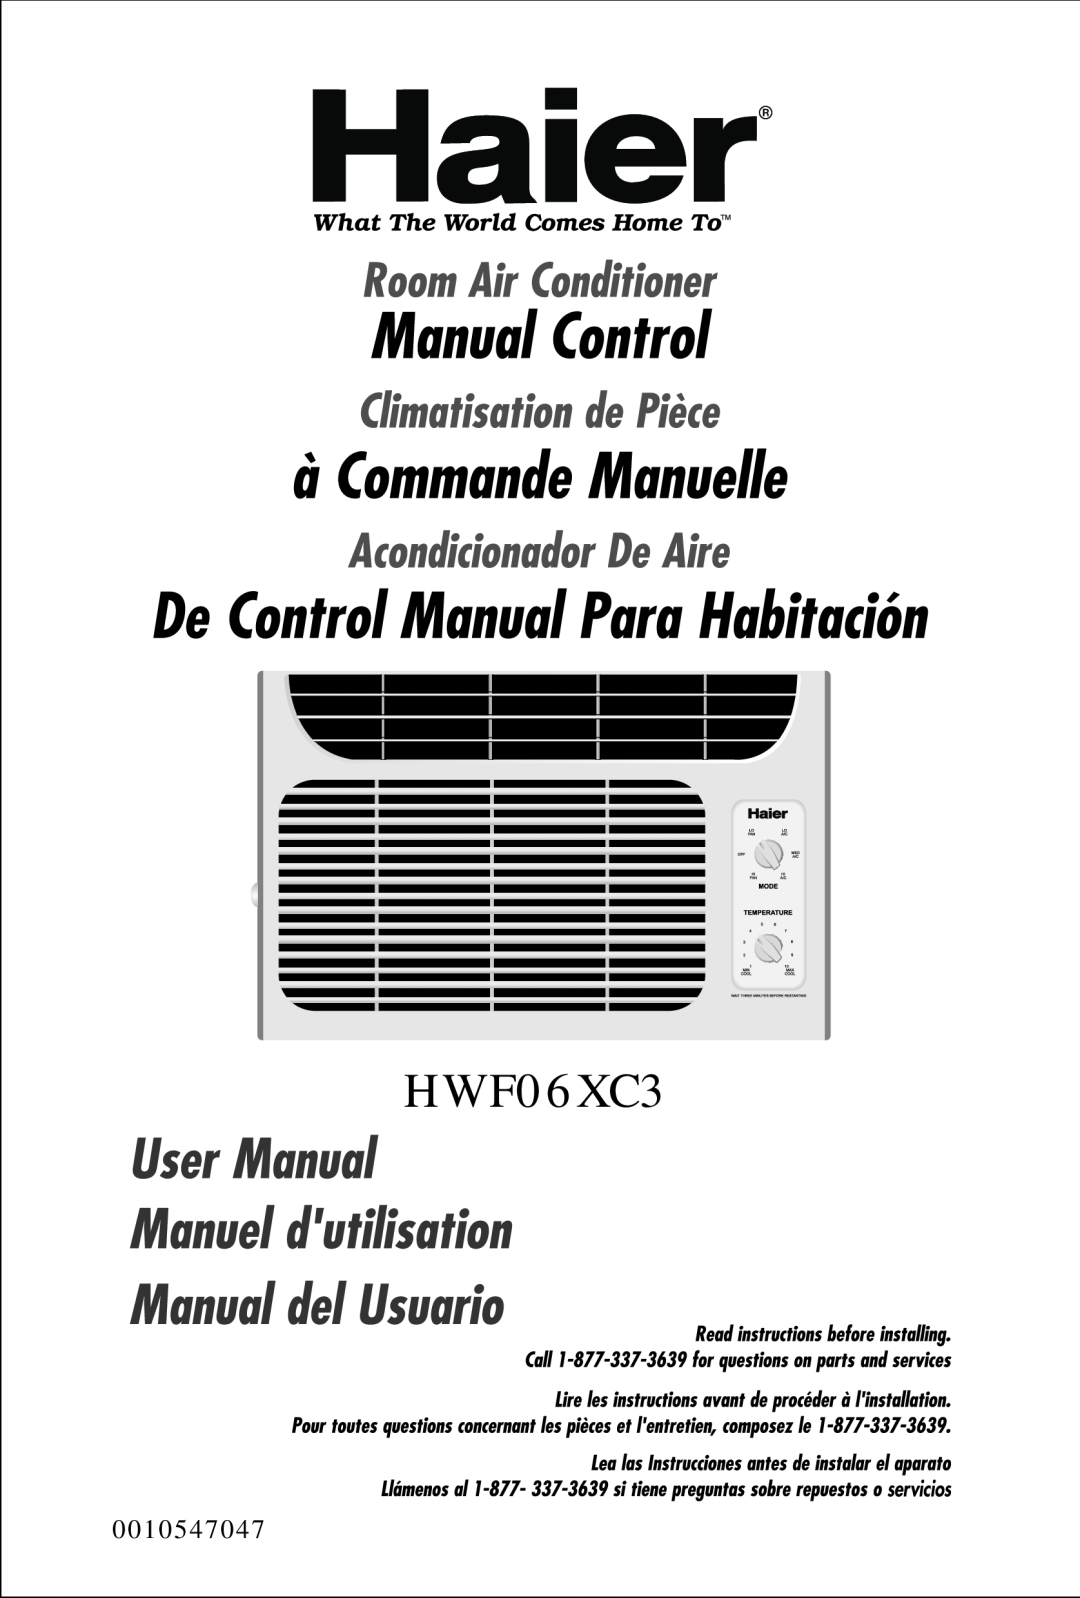 Haier HWF06XC3 manual 0010547047 